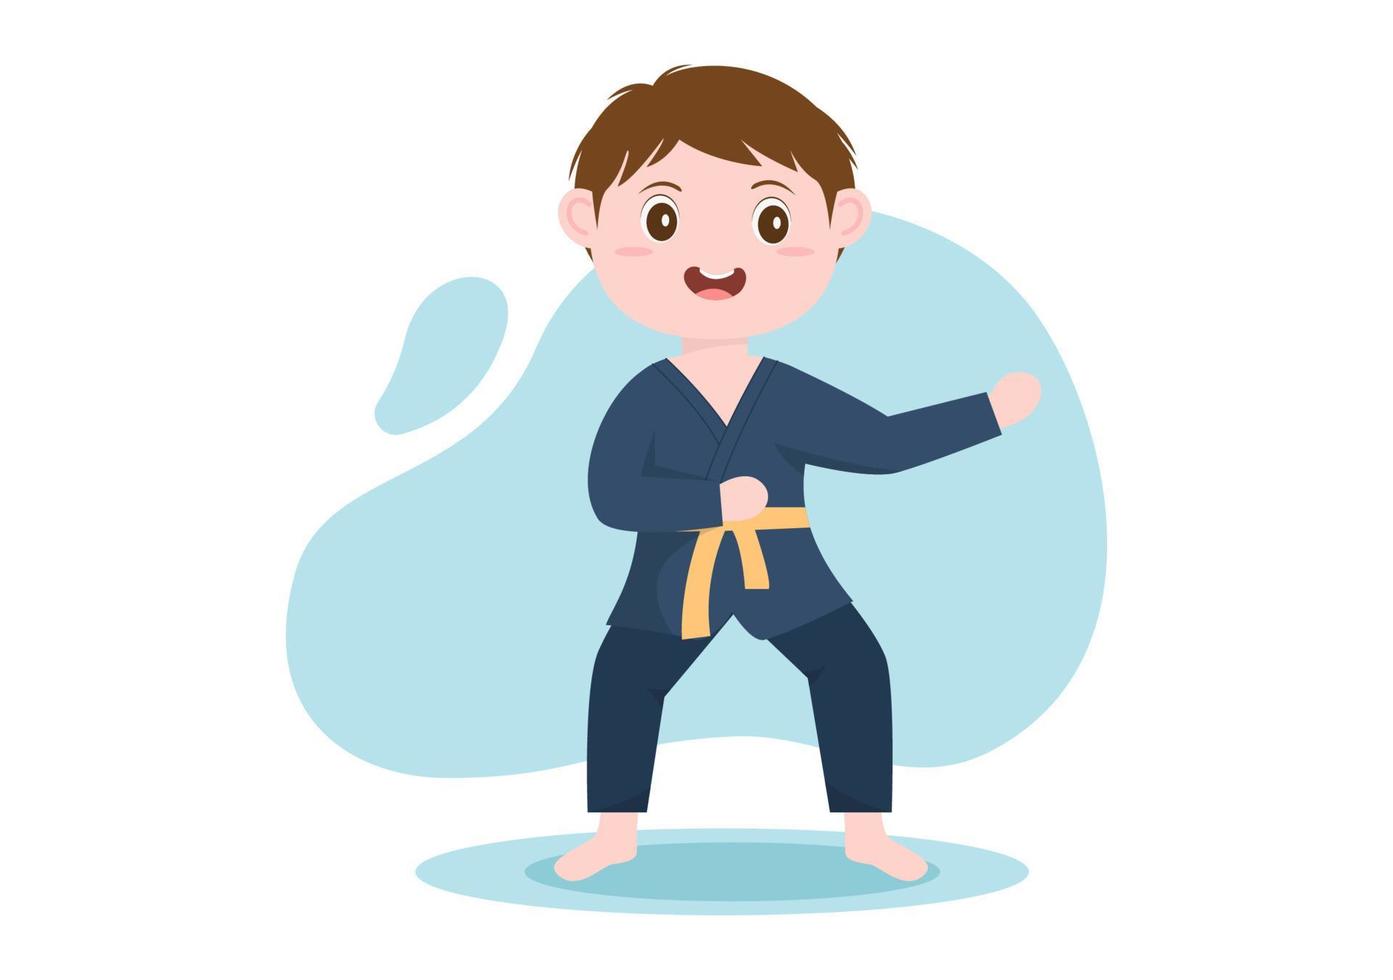 enfants de dessin animé mignon faisant quelques mouvements d'arts martiaux de karaté de base, pose de combat et portant un kimono en illustration vectorielle de fond de style plat vecteur